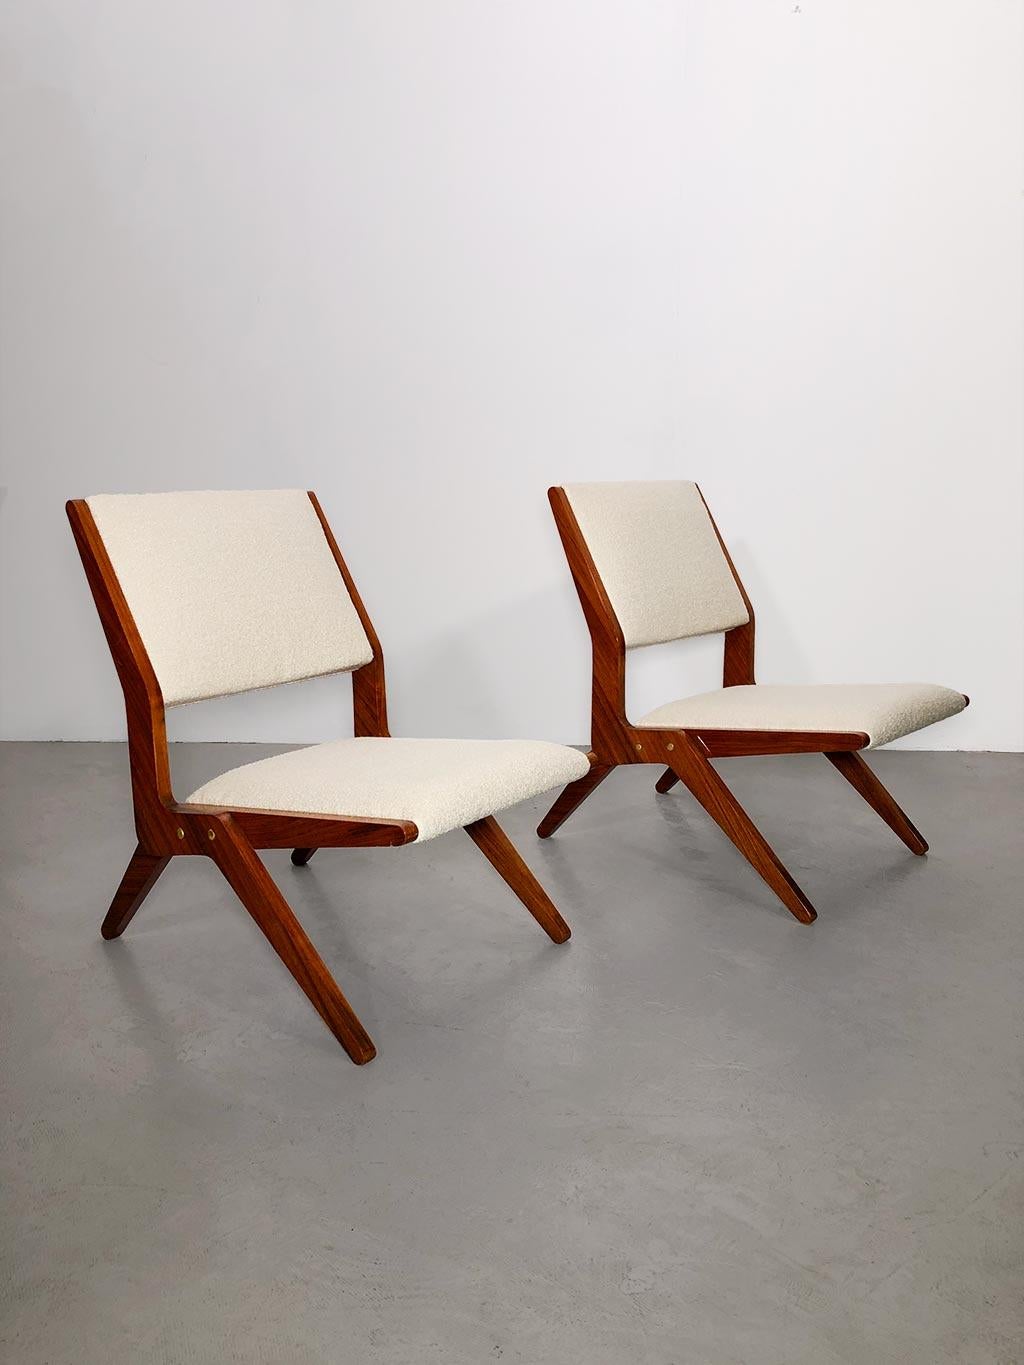 Magnifique paire de fauteuils du milieu du siècle attribuée à Augusto Romano. Cadre à ciseaux en noyer laqué poli, détails en laiton. L'assise et le dossier ont été entièrement restaurés par des tapissiers professionnels selon les techniques de